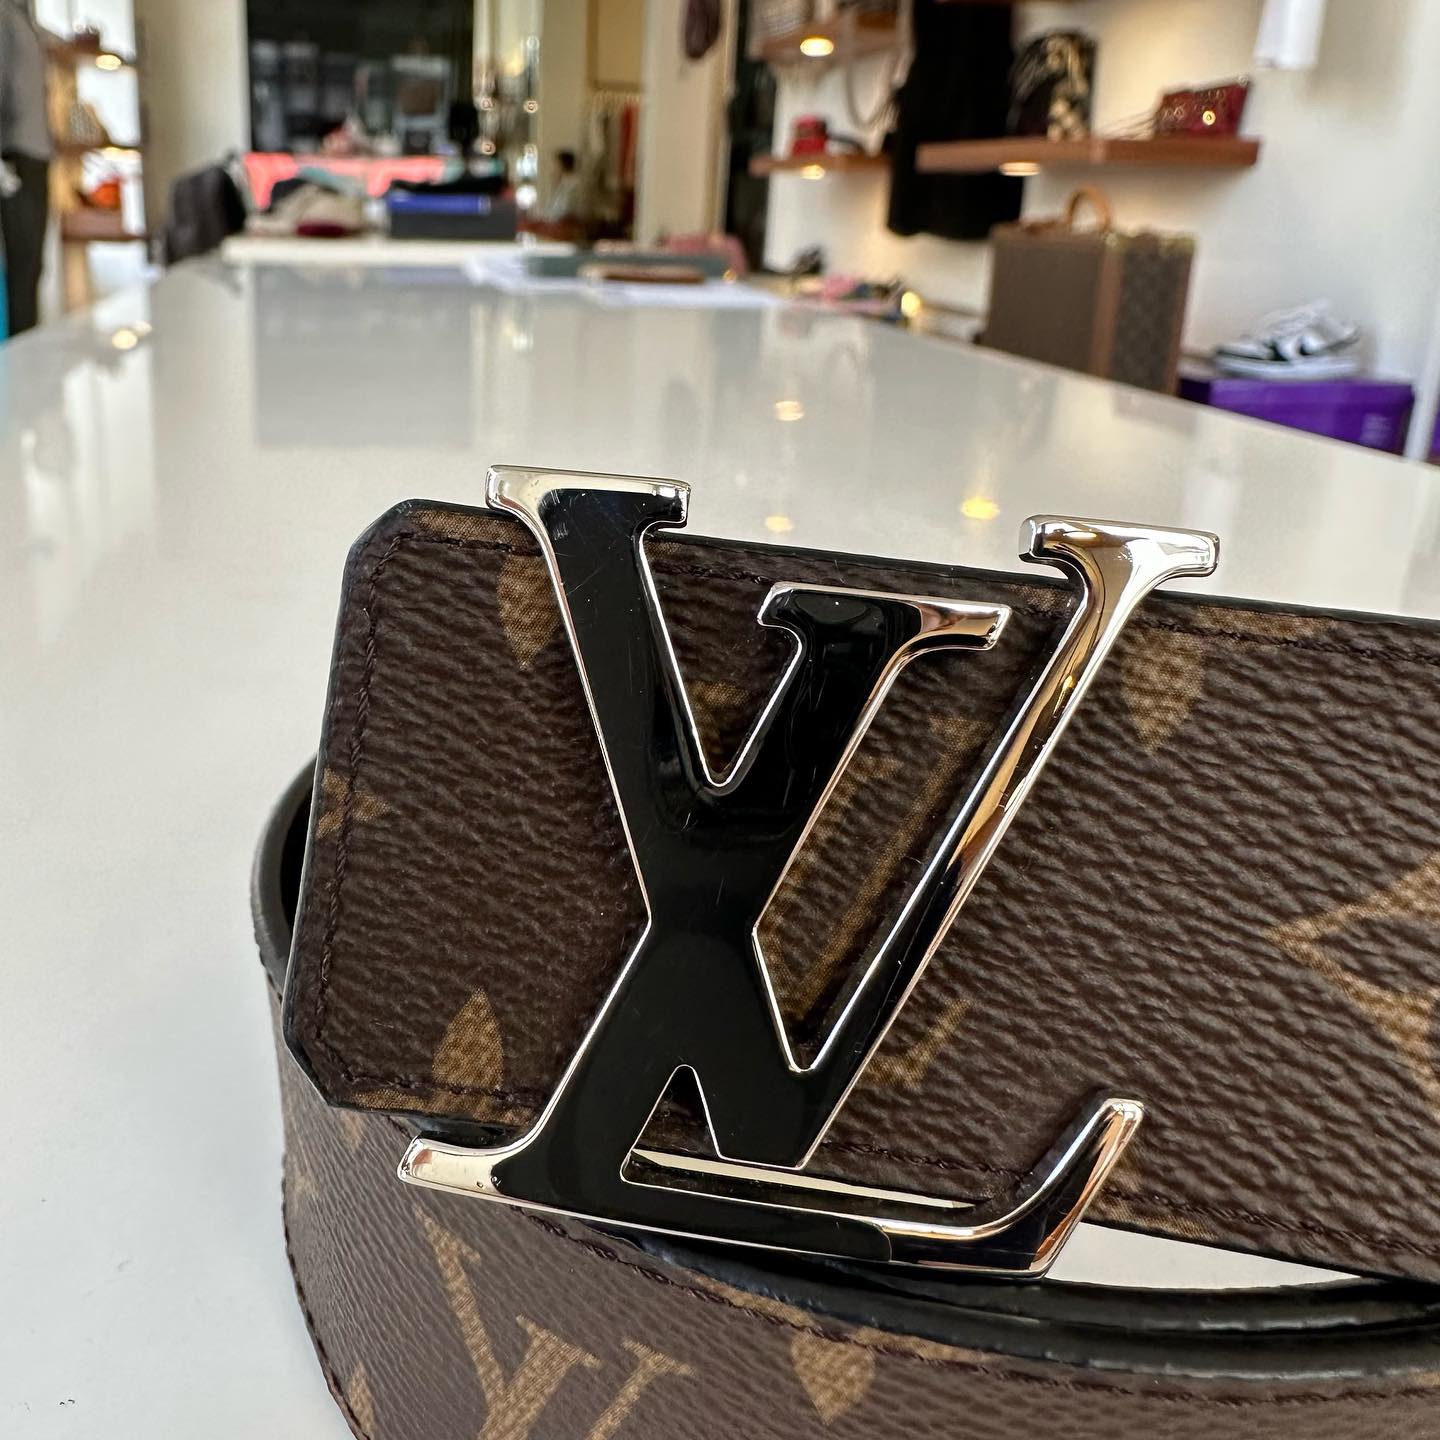 Cintura Louis Vuitton, il modello Initials 40 MM - Moda uomo